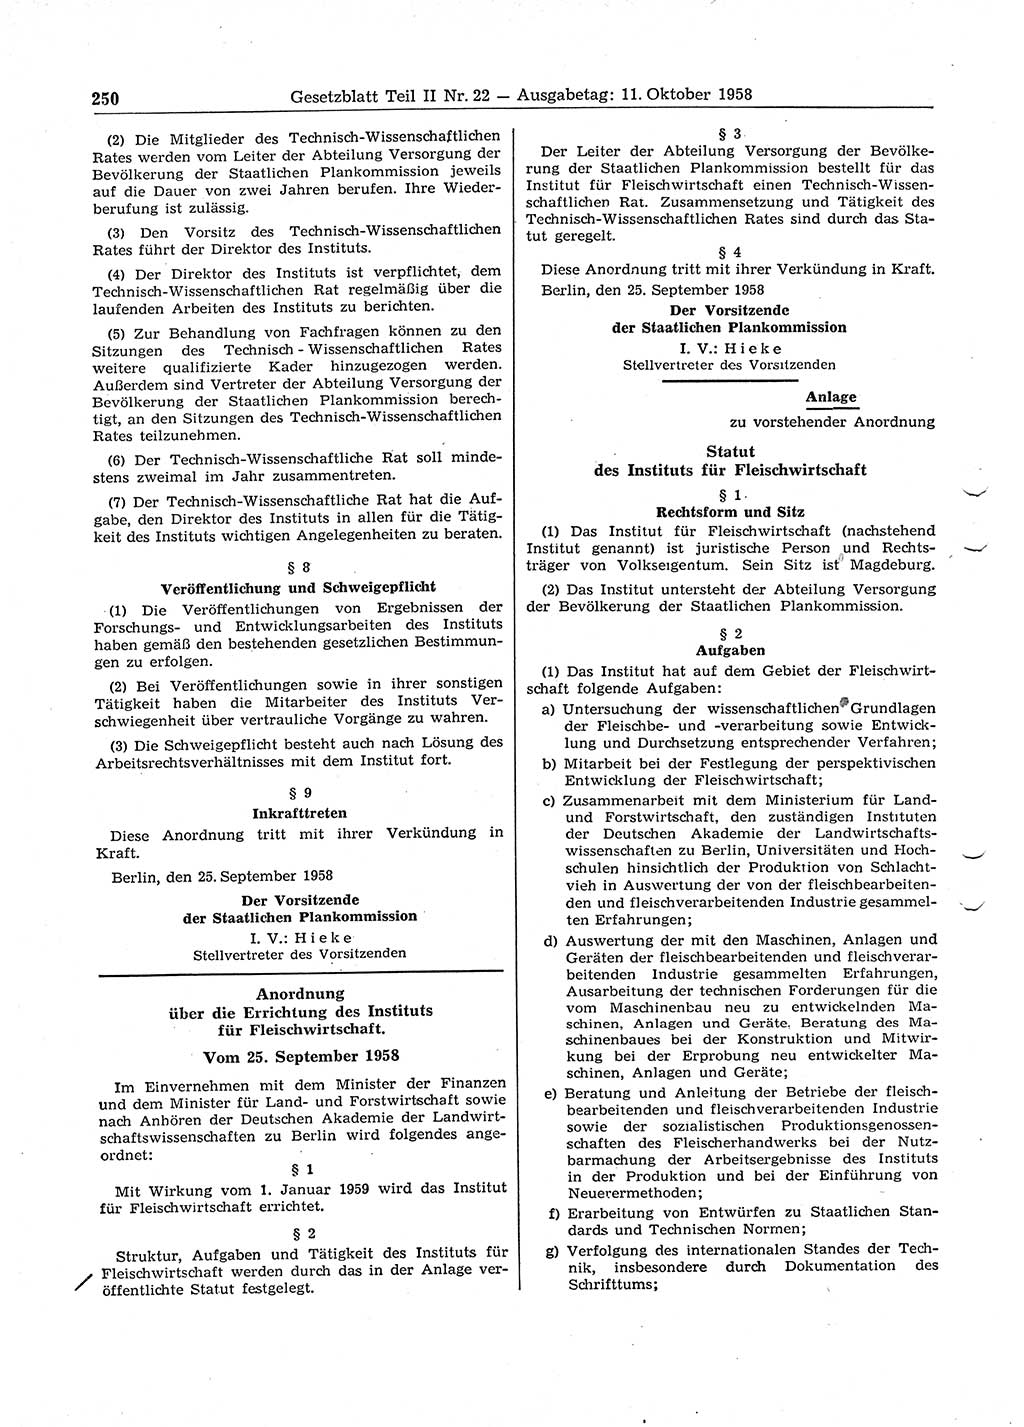 Gesetzblatt (GBl.) der Deutschen Demokratischen Republik (DDR) Teil â… â… 1958, Seite 250 (GBl. DDR â… â… 1958, S. 250)